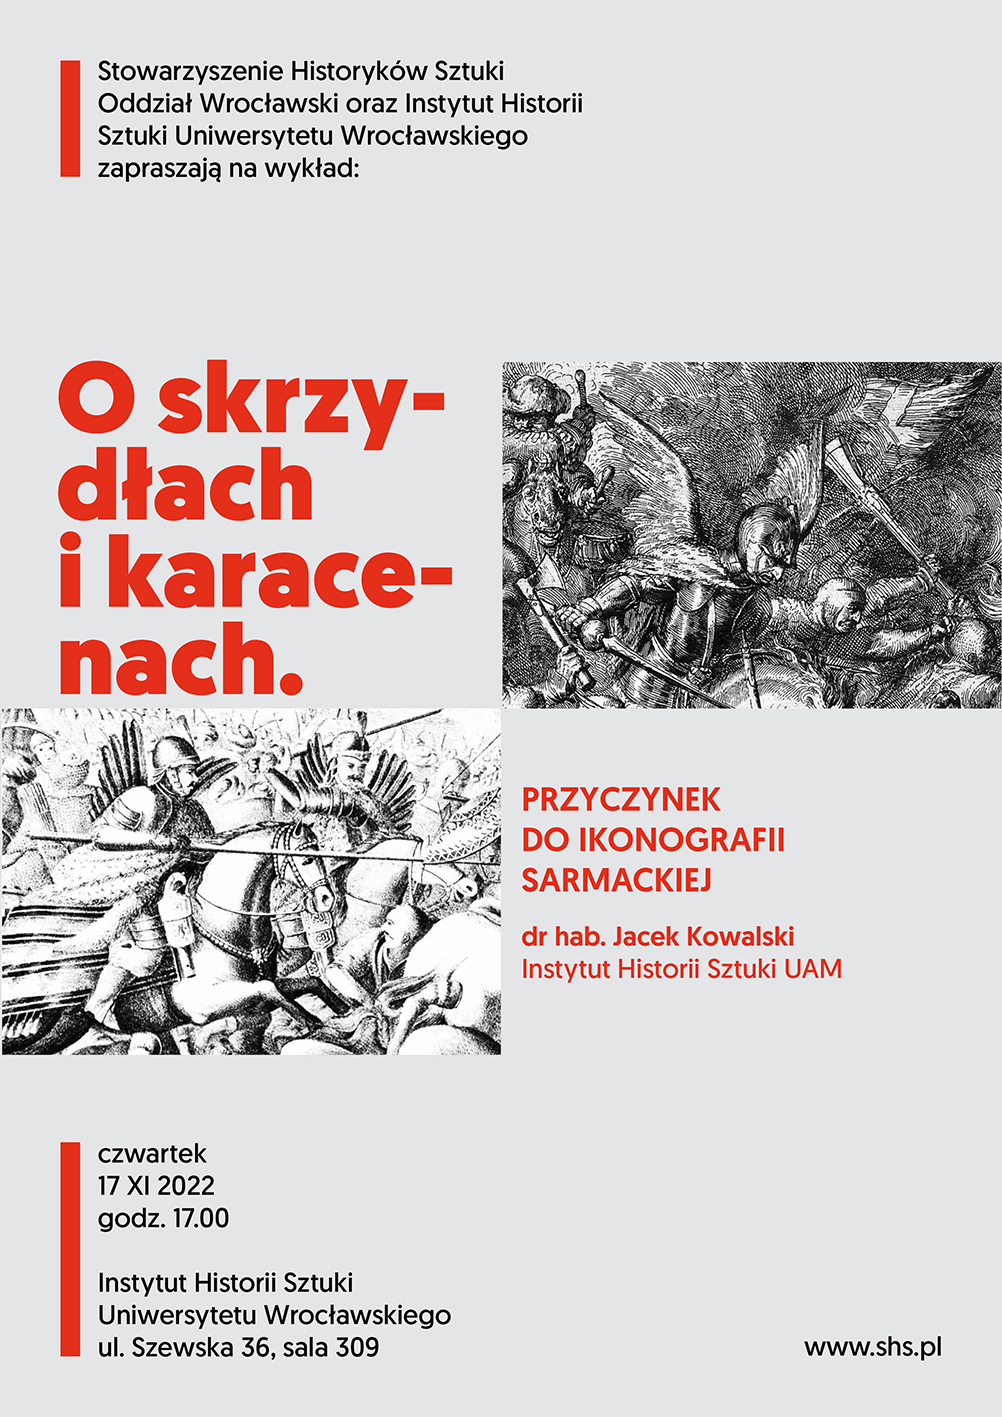 Zaproszenie na wykład "O SKRZYDŁACH I KARACENACH" który odbędzie się 17 listopada o godz. 17:00 w Instytucie Historii Sztuki Uniwersytetu Wrocławskiego przy ul. Szewskiej 36, w sali 309.